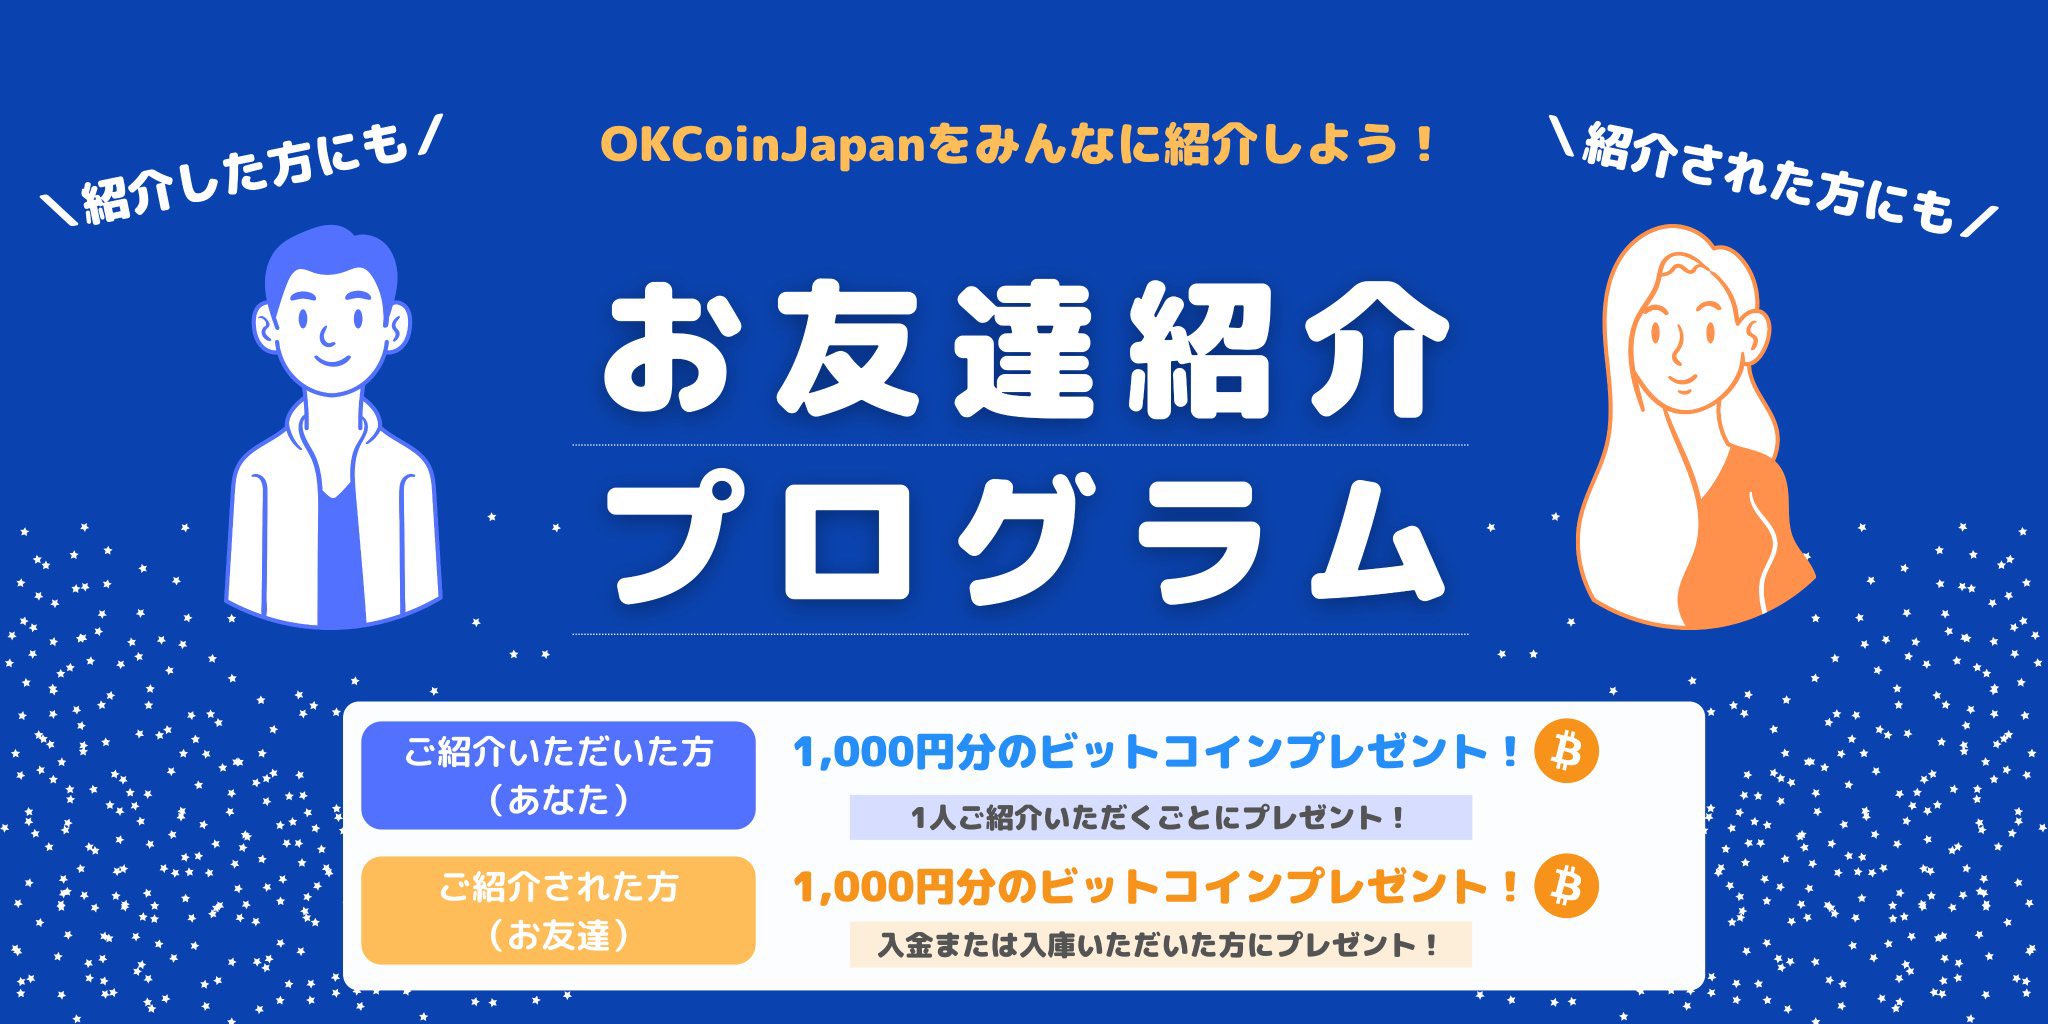 OKCoinJAPAN友達紹介で1,000円分のBTCプレゼントキャンペーン